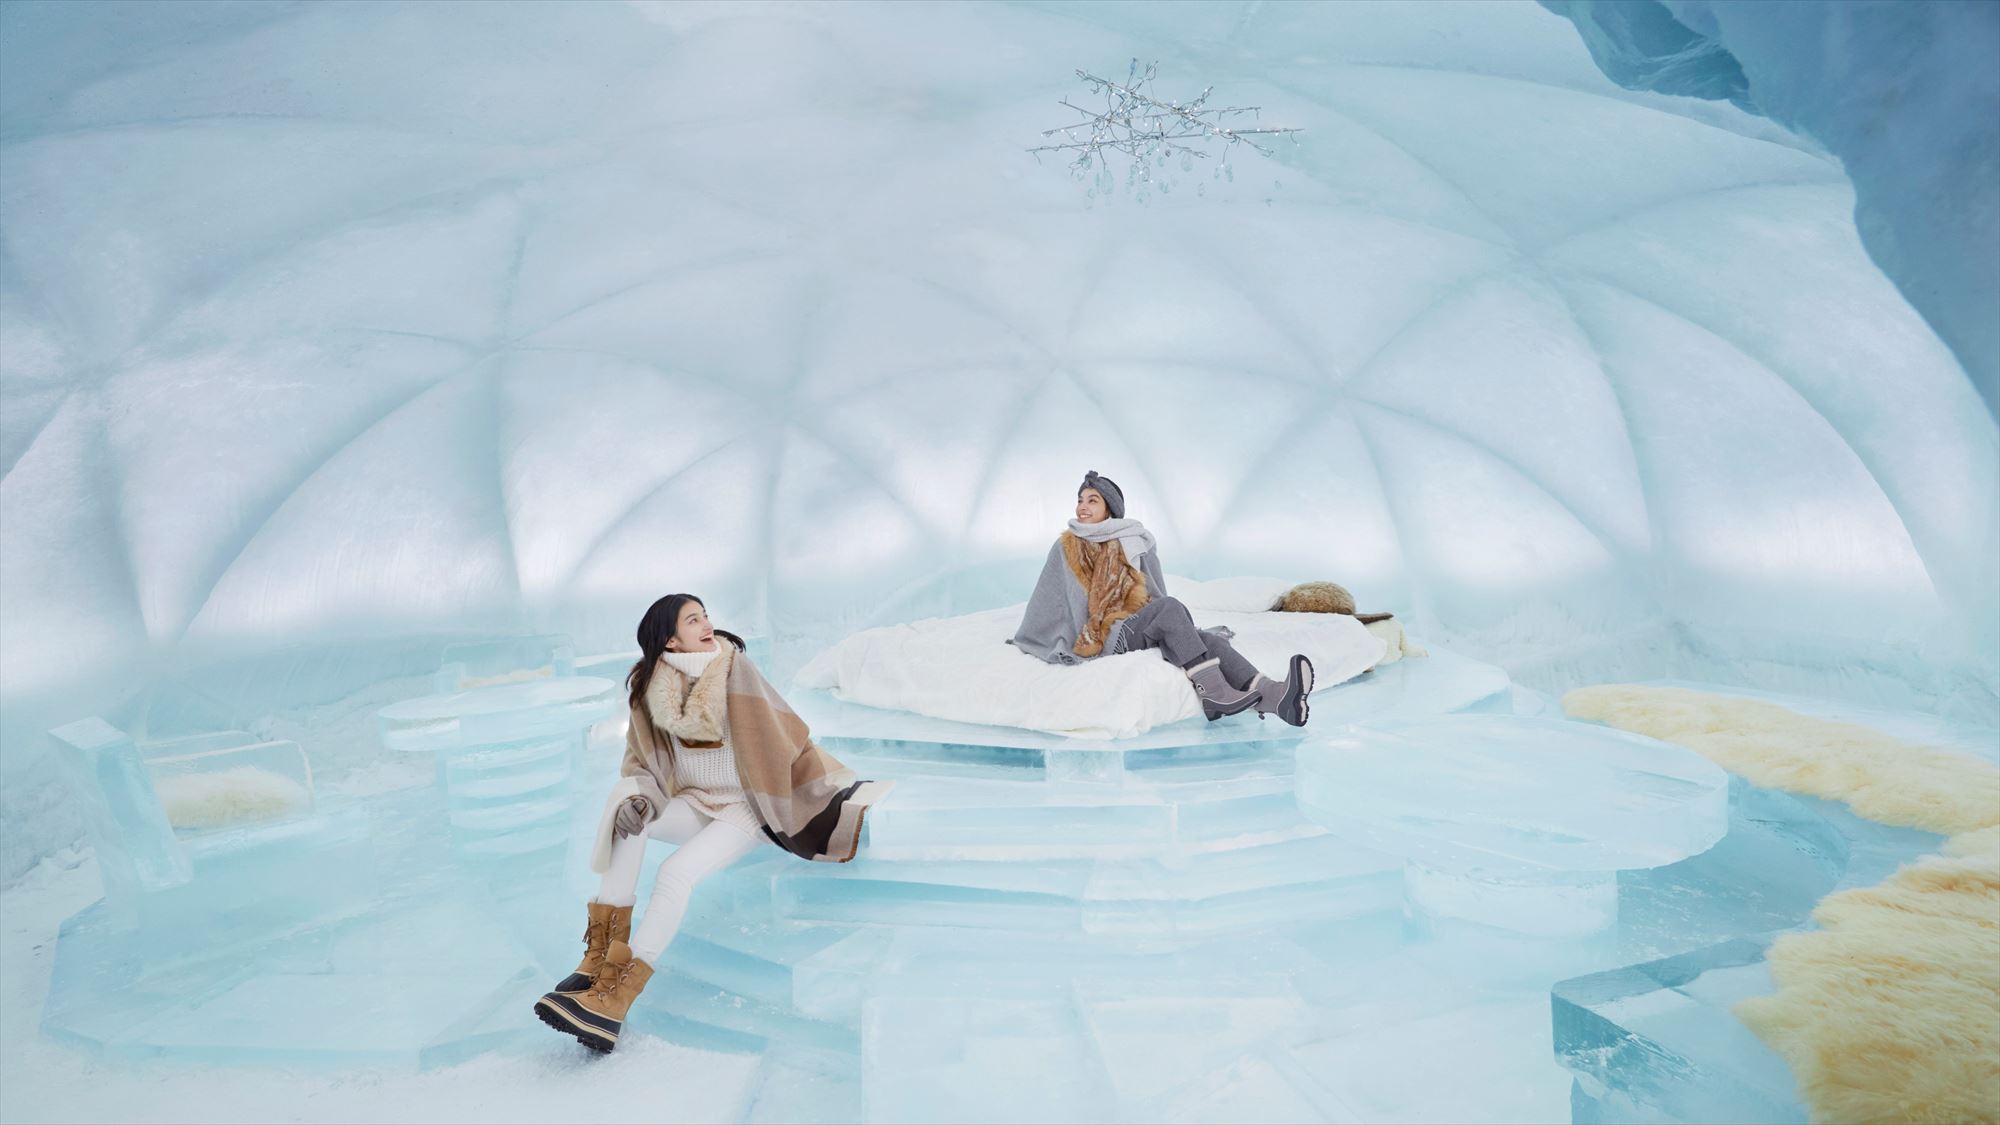 【アイスヴィレッジ】氷のホテル